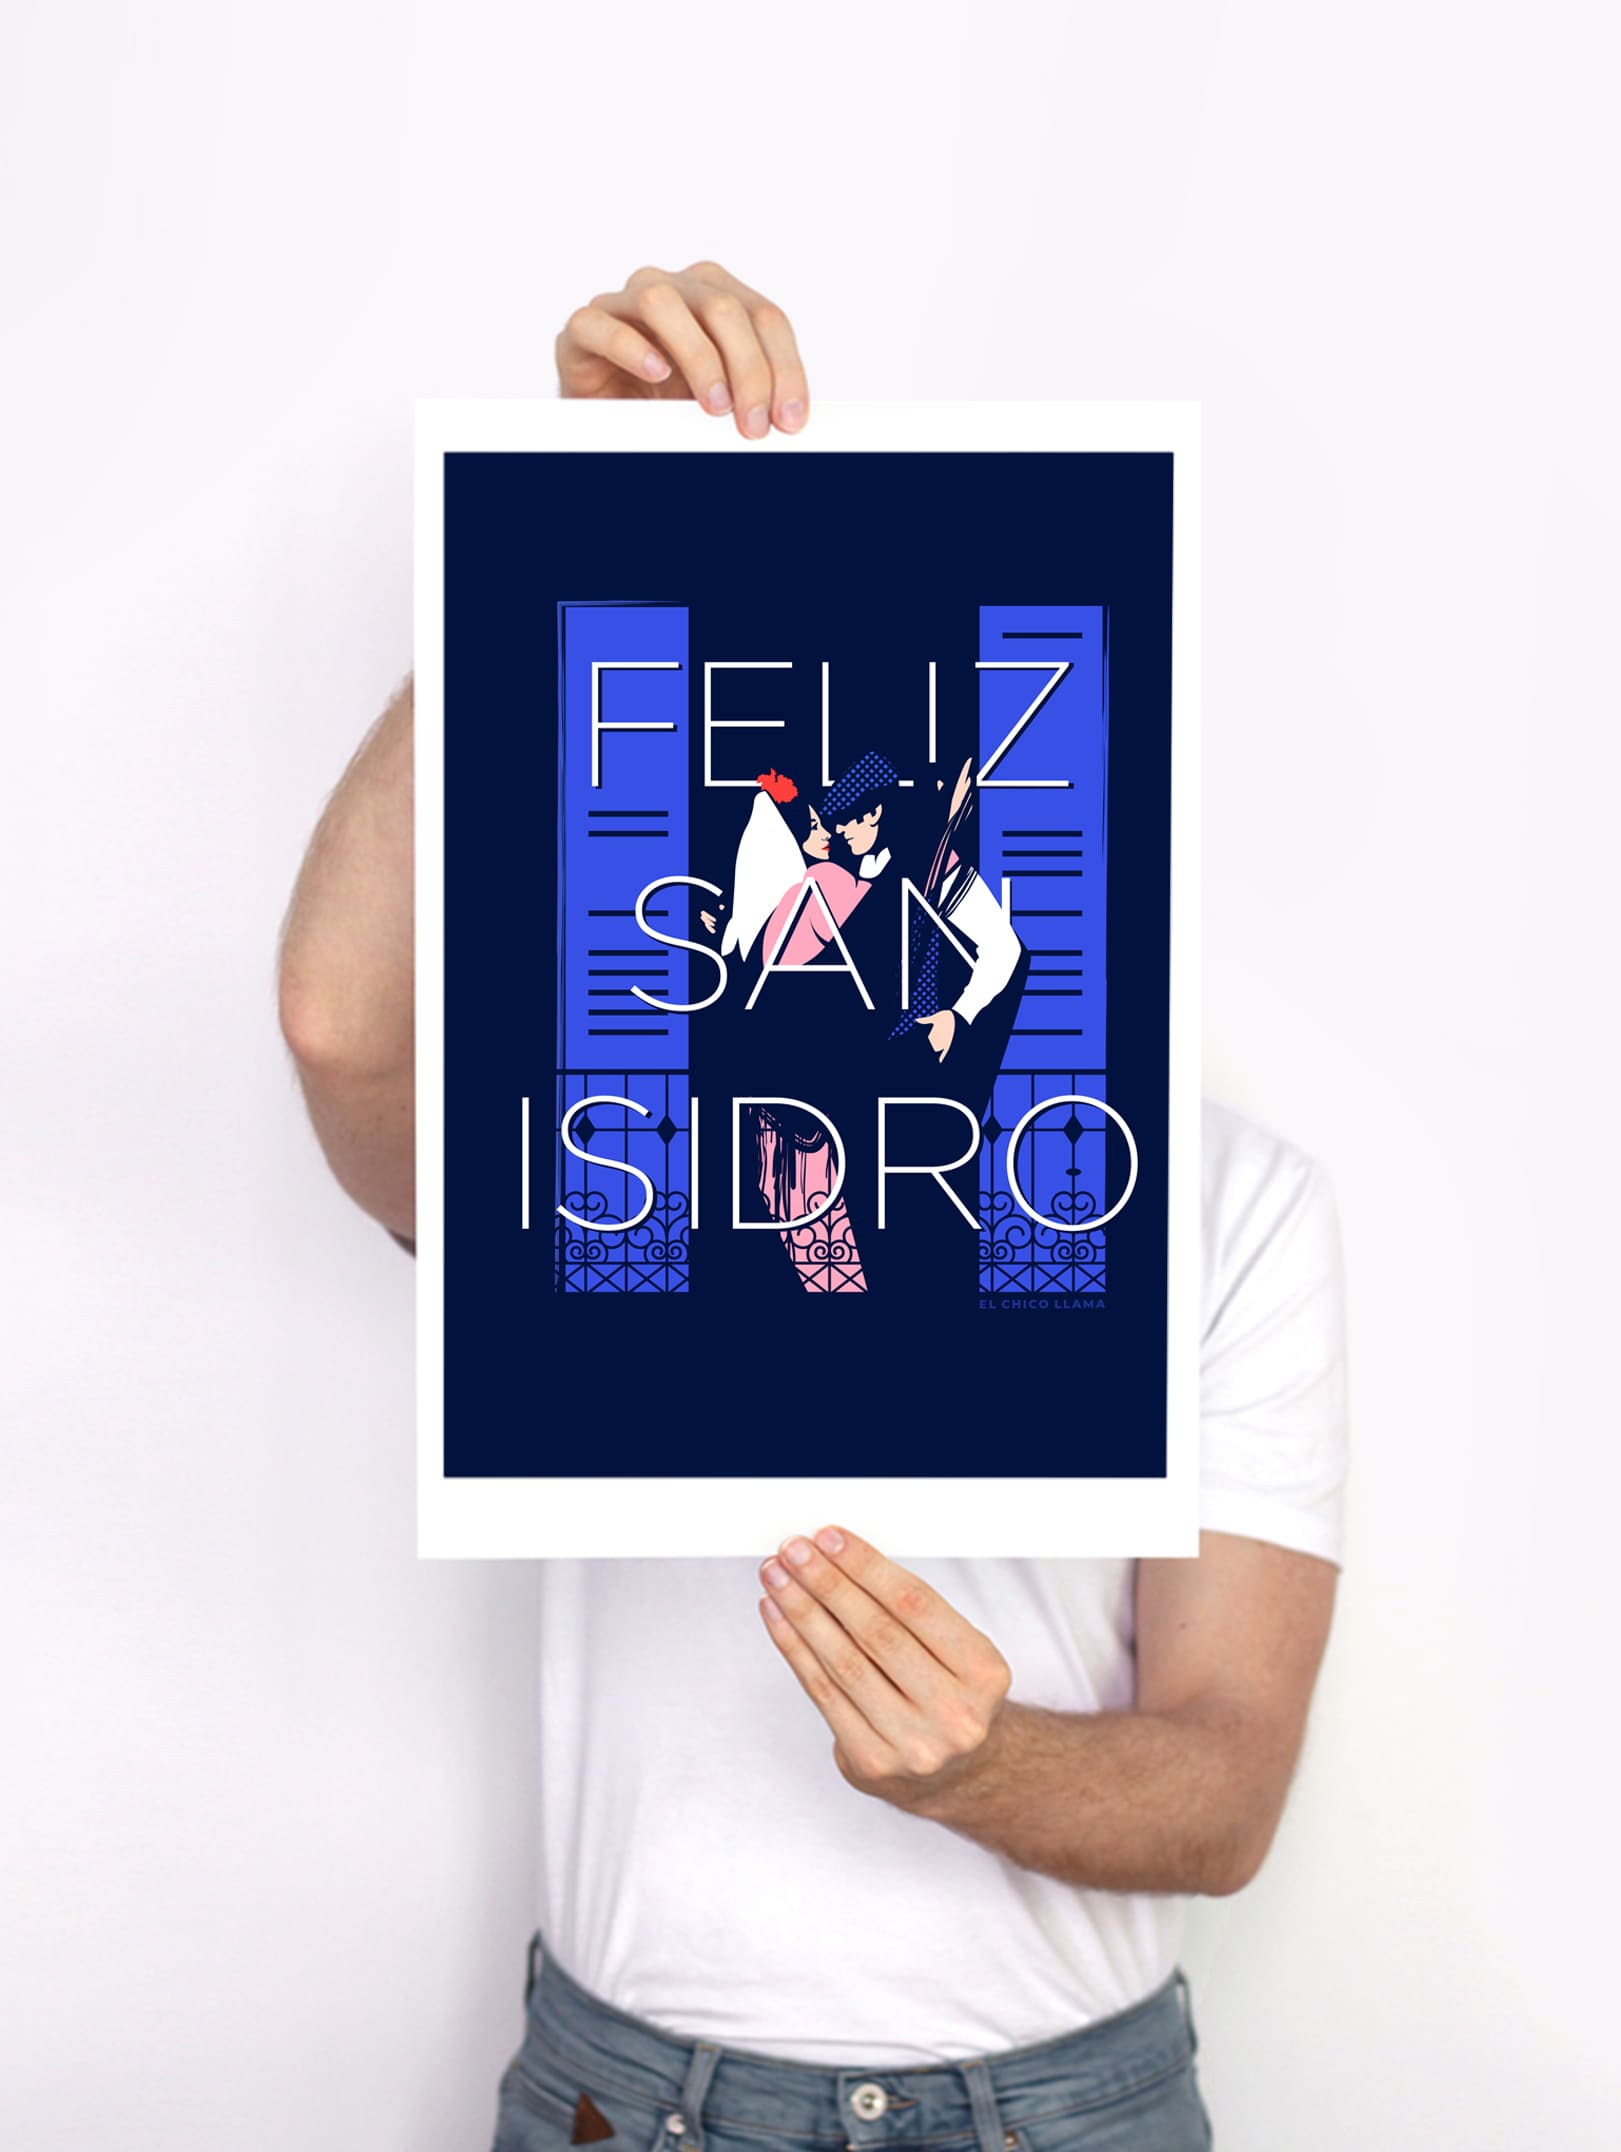 Cartel San Isidro 2020 - El Chico Llama